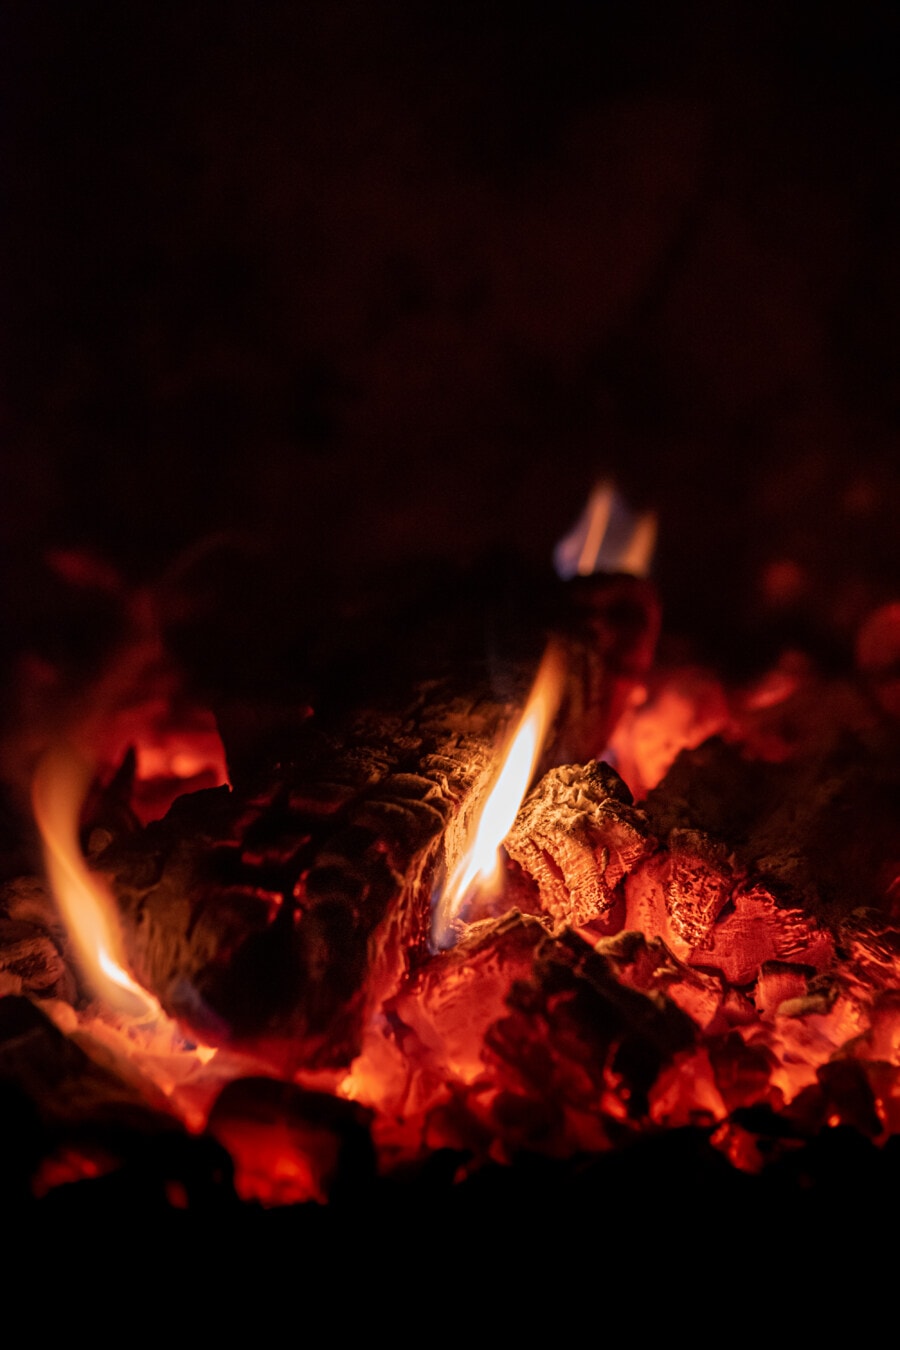 벽난로, 캠프 파이어, 화재, 굽기, 빛, 열, 핫, 따뜻한, 석탄, 모닥불